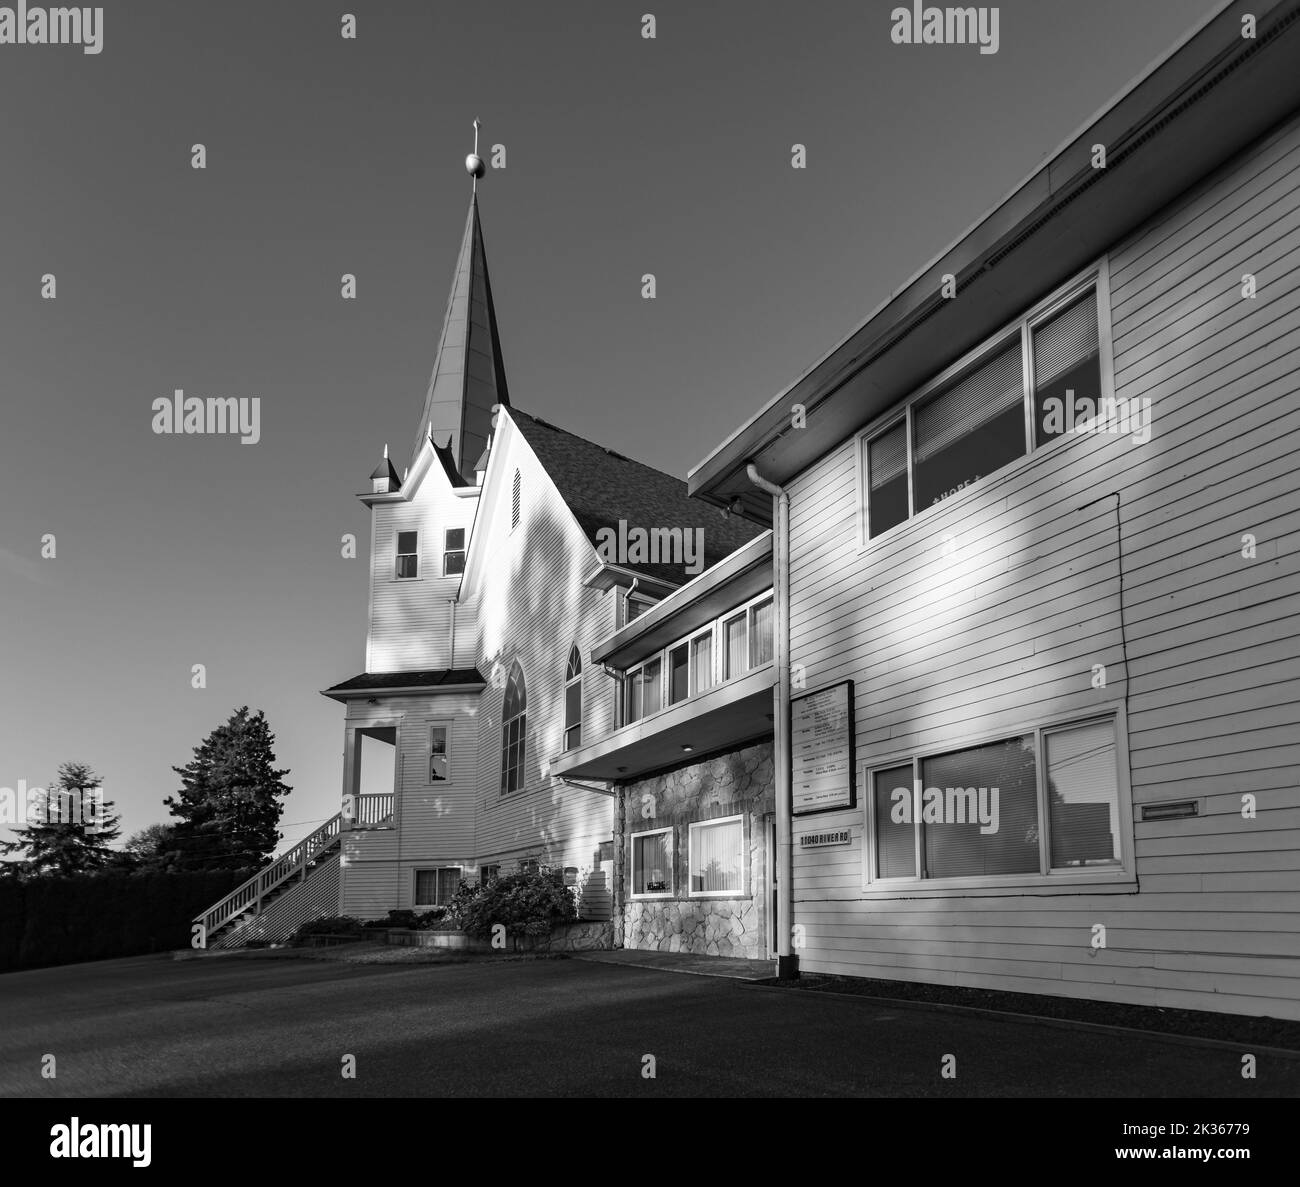 Façade d'une église en bois blanc au coucher du soleil dans la campagne. Église luthérienne de la Colombie-Britannique. Photo en noir et blanc Banque D'Images